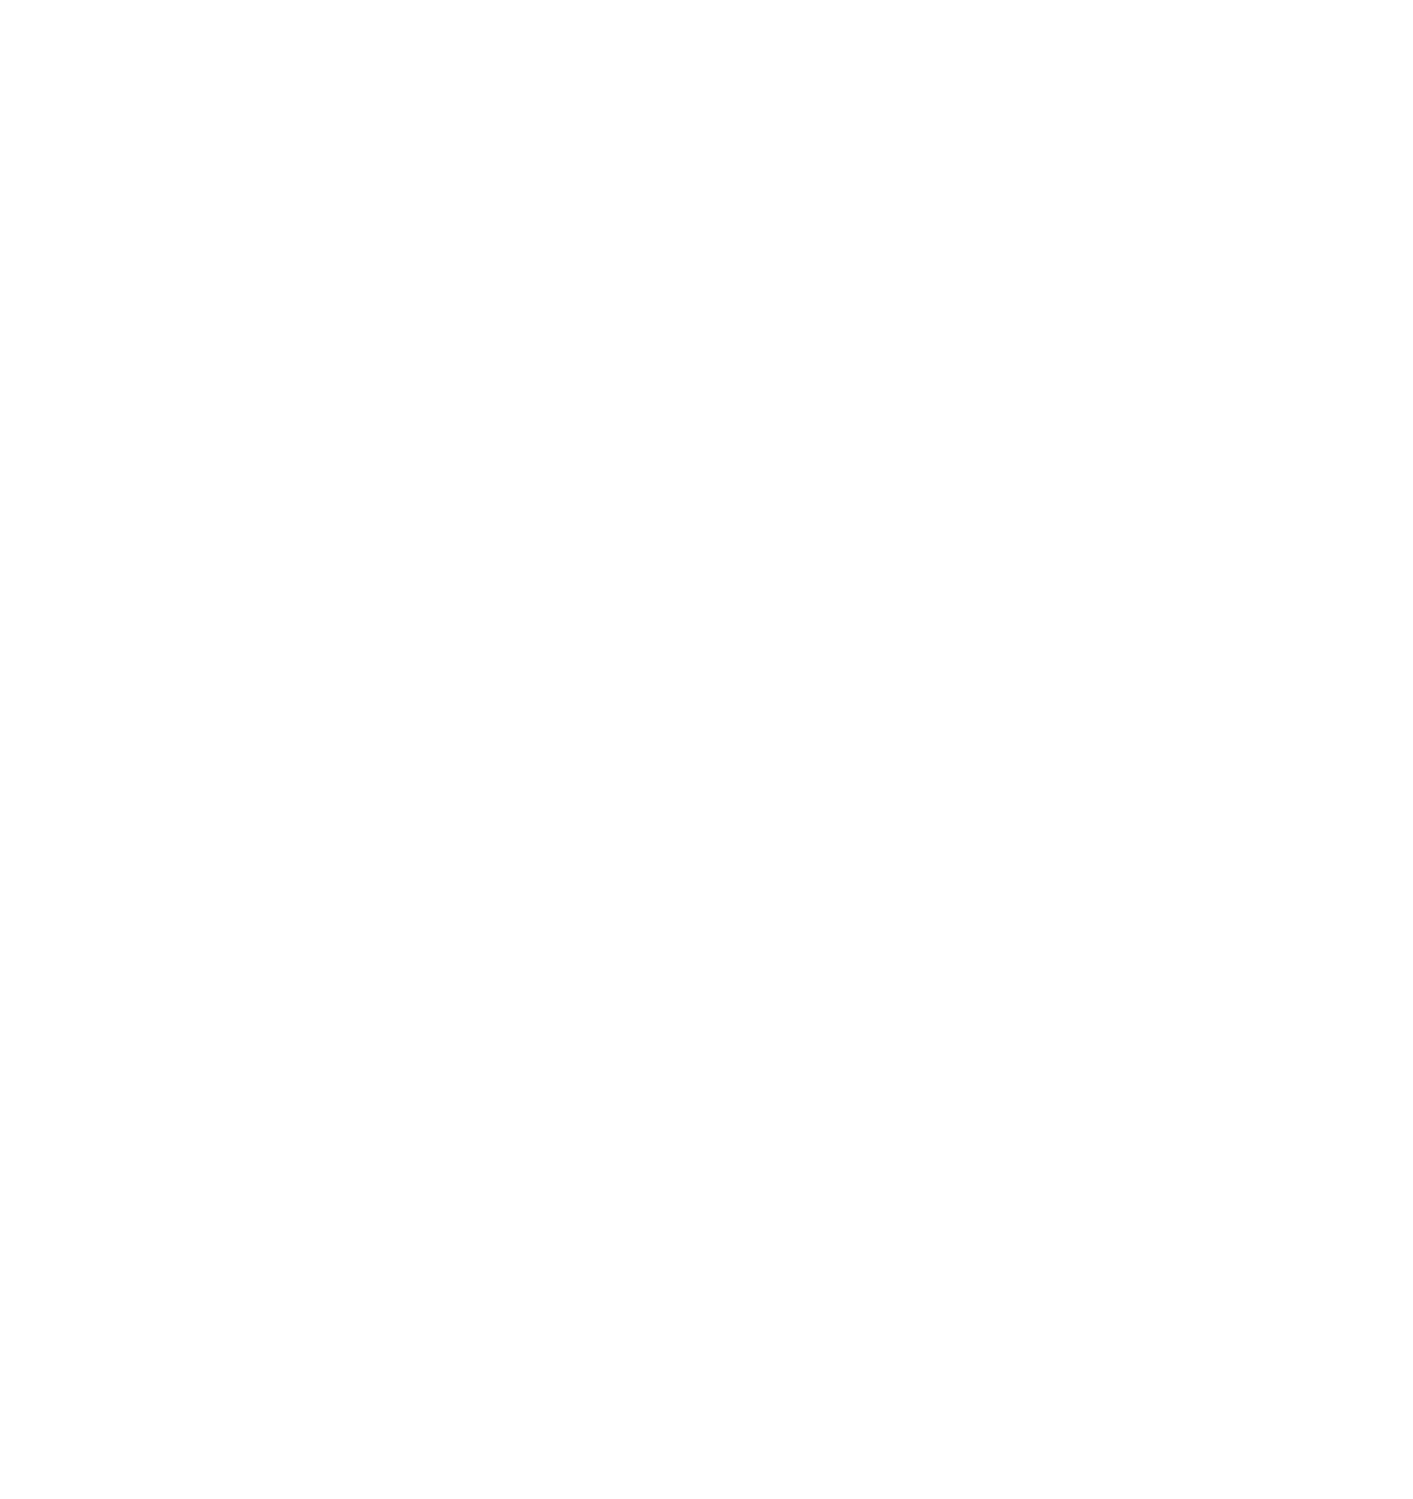 Saga Communications logo for dark backgrounds (transparent PNG)